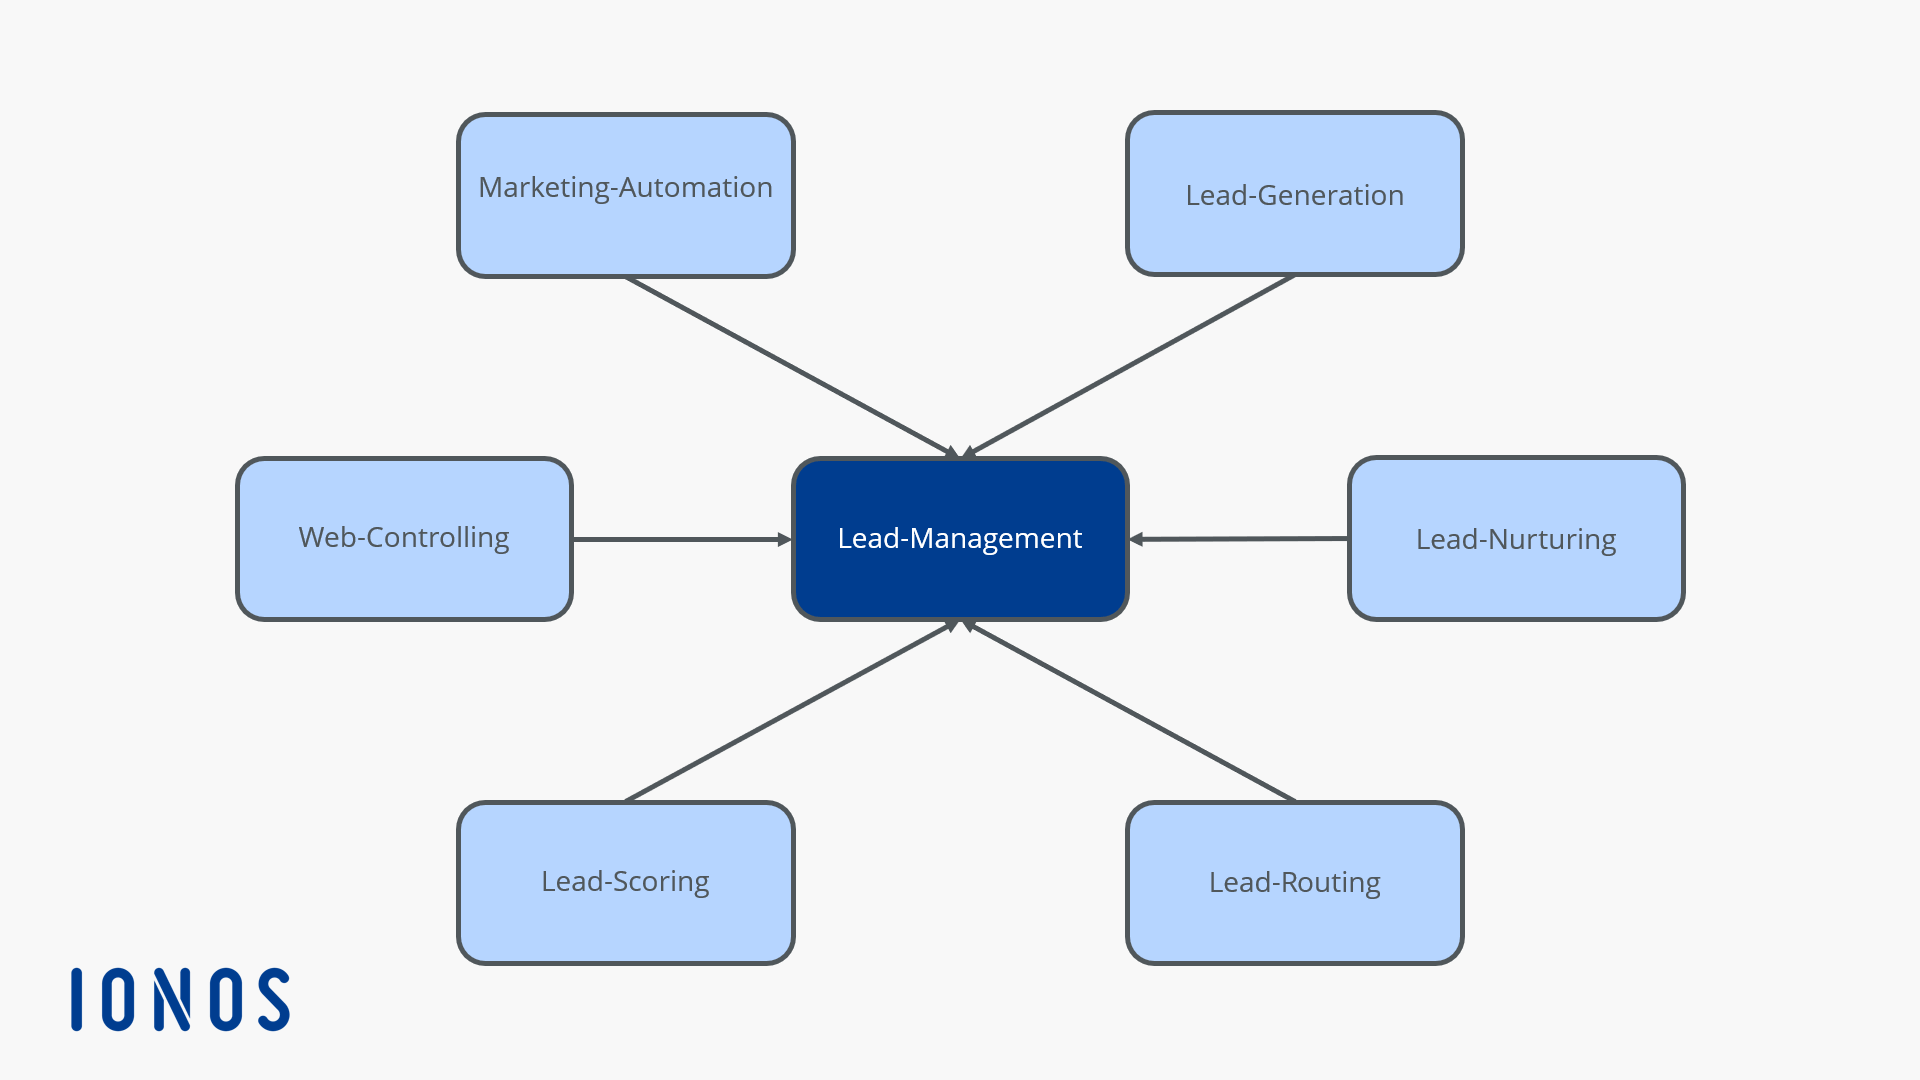 Grafik zum Zusammenwirken der verschiedenen Aspekte im Lead-Management